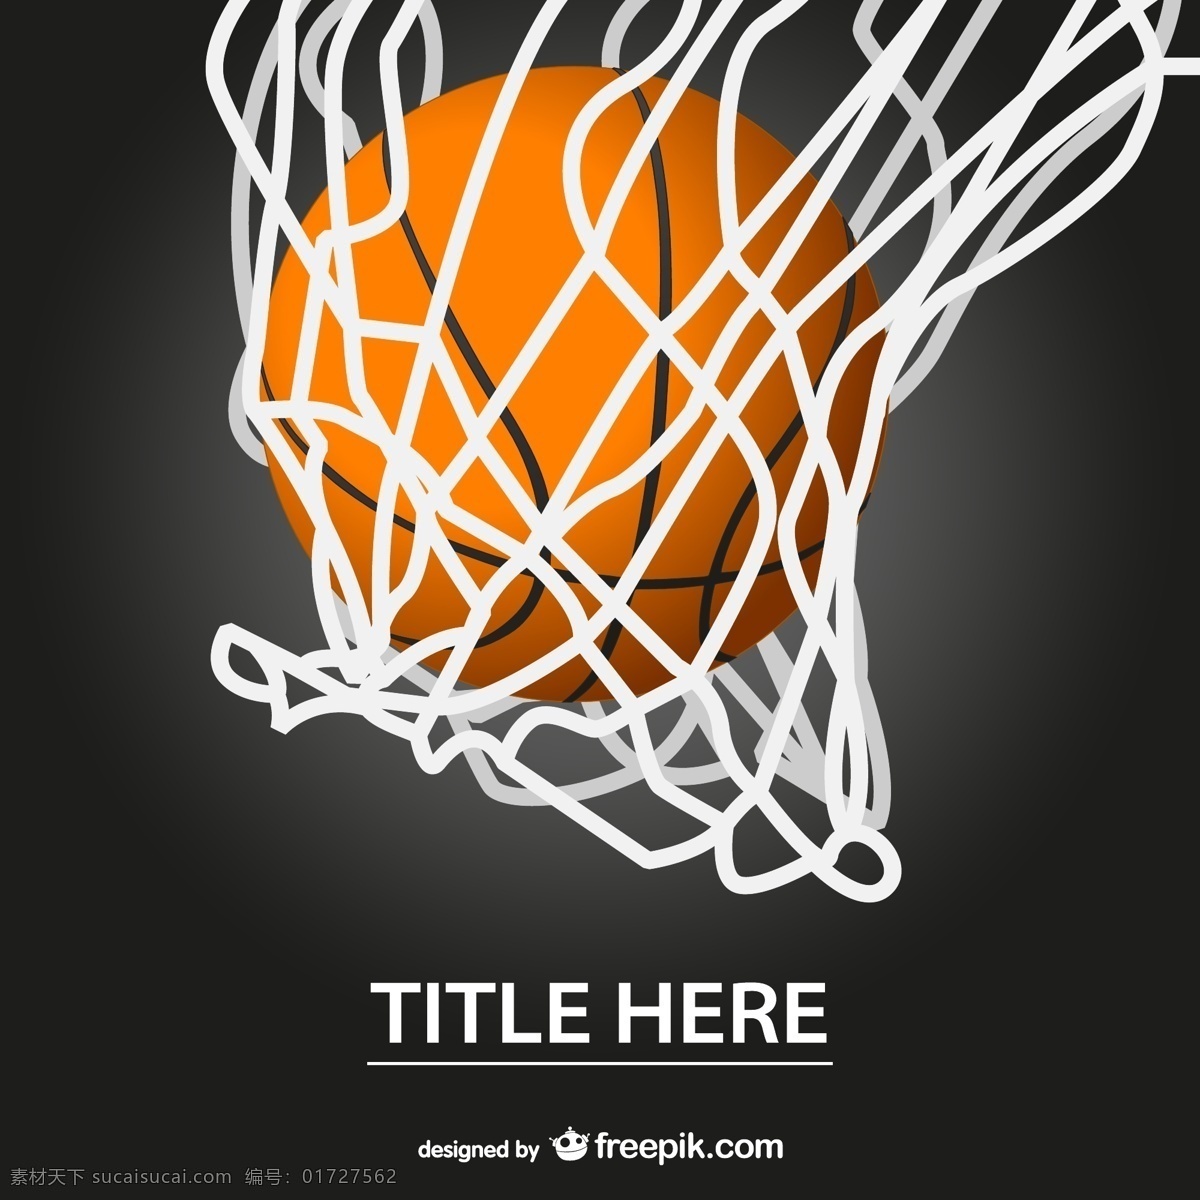 篮球 球网 篮球海报 basketball 篮球比赛 篮球背景 篮球元素 nba cba 矢量篮球 篮球卡片 矢量图片 矢量素材 其他矢量 矢量